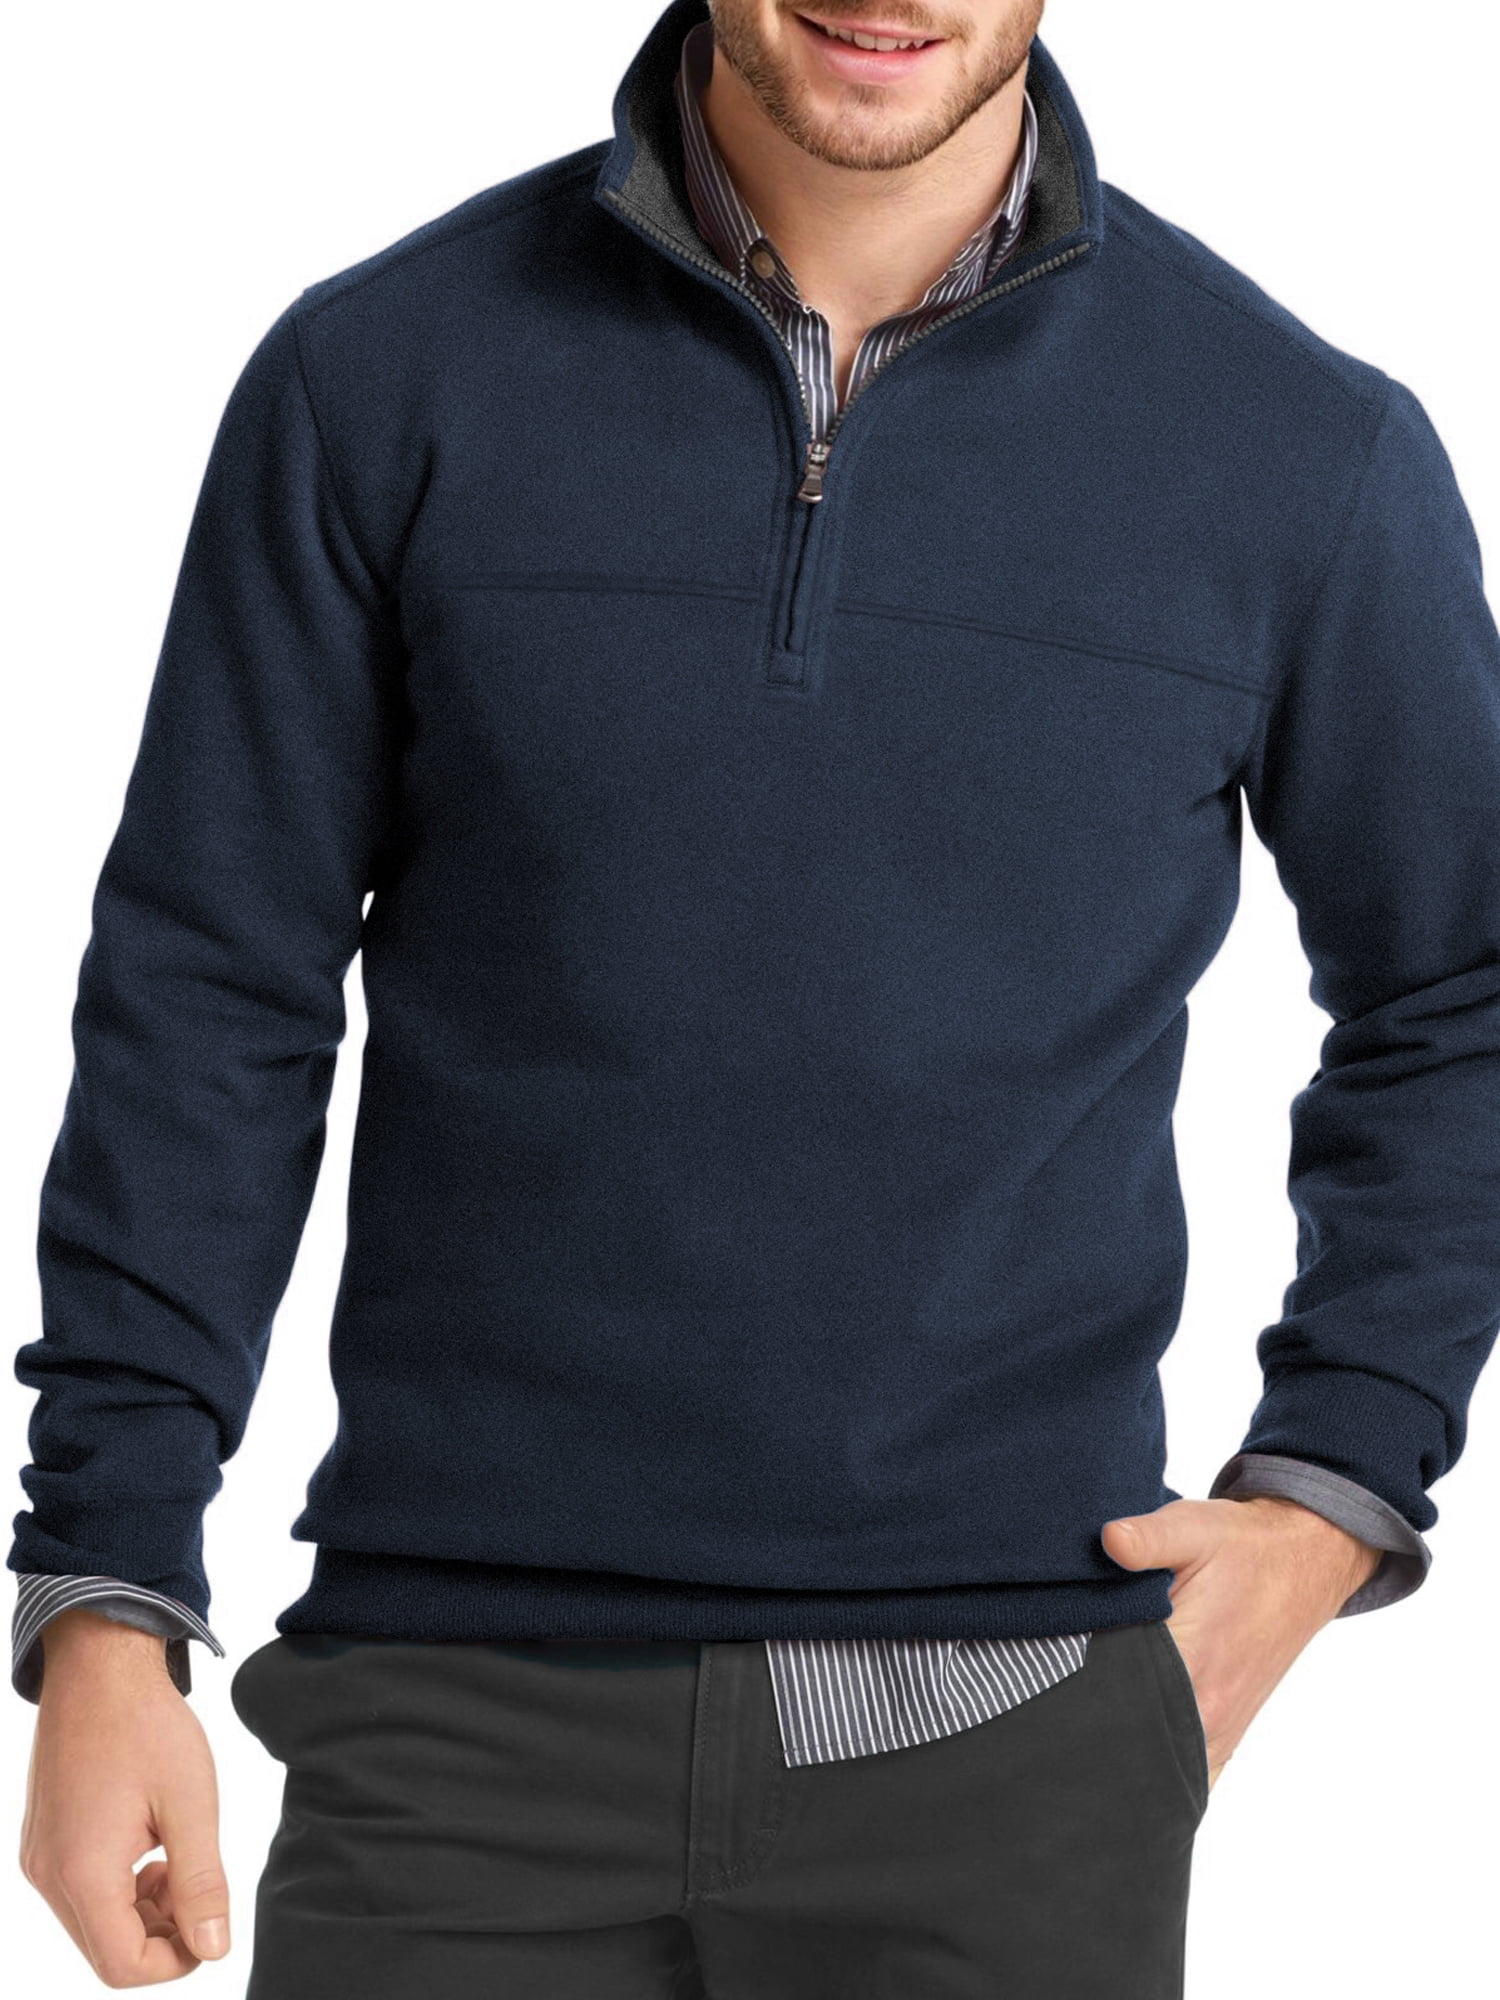 North Hudson Outfitters Men's Sueded Fleece Zip Sweatshirt - Walmart.com